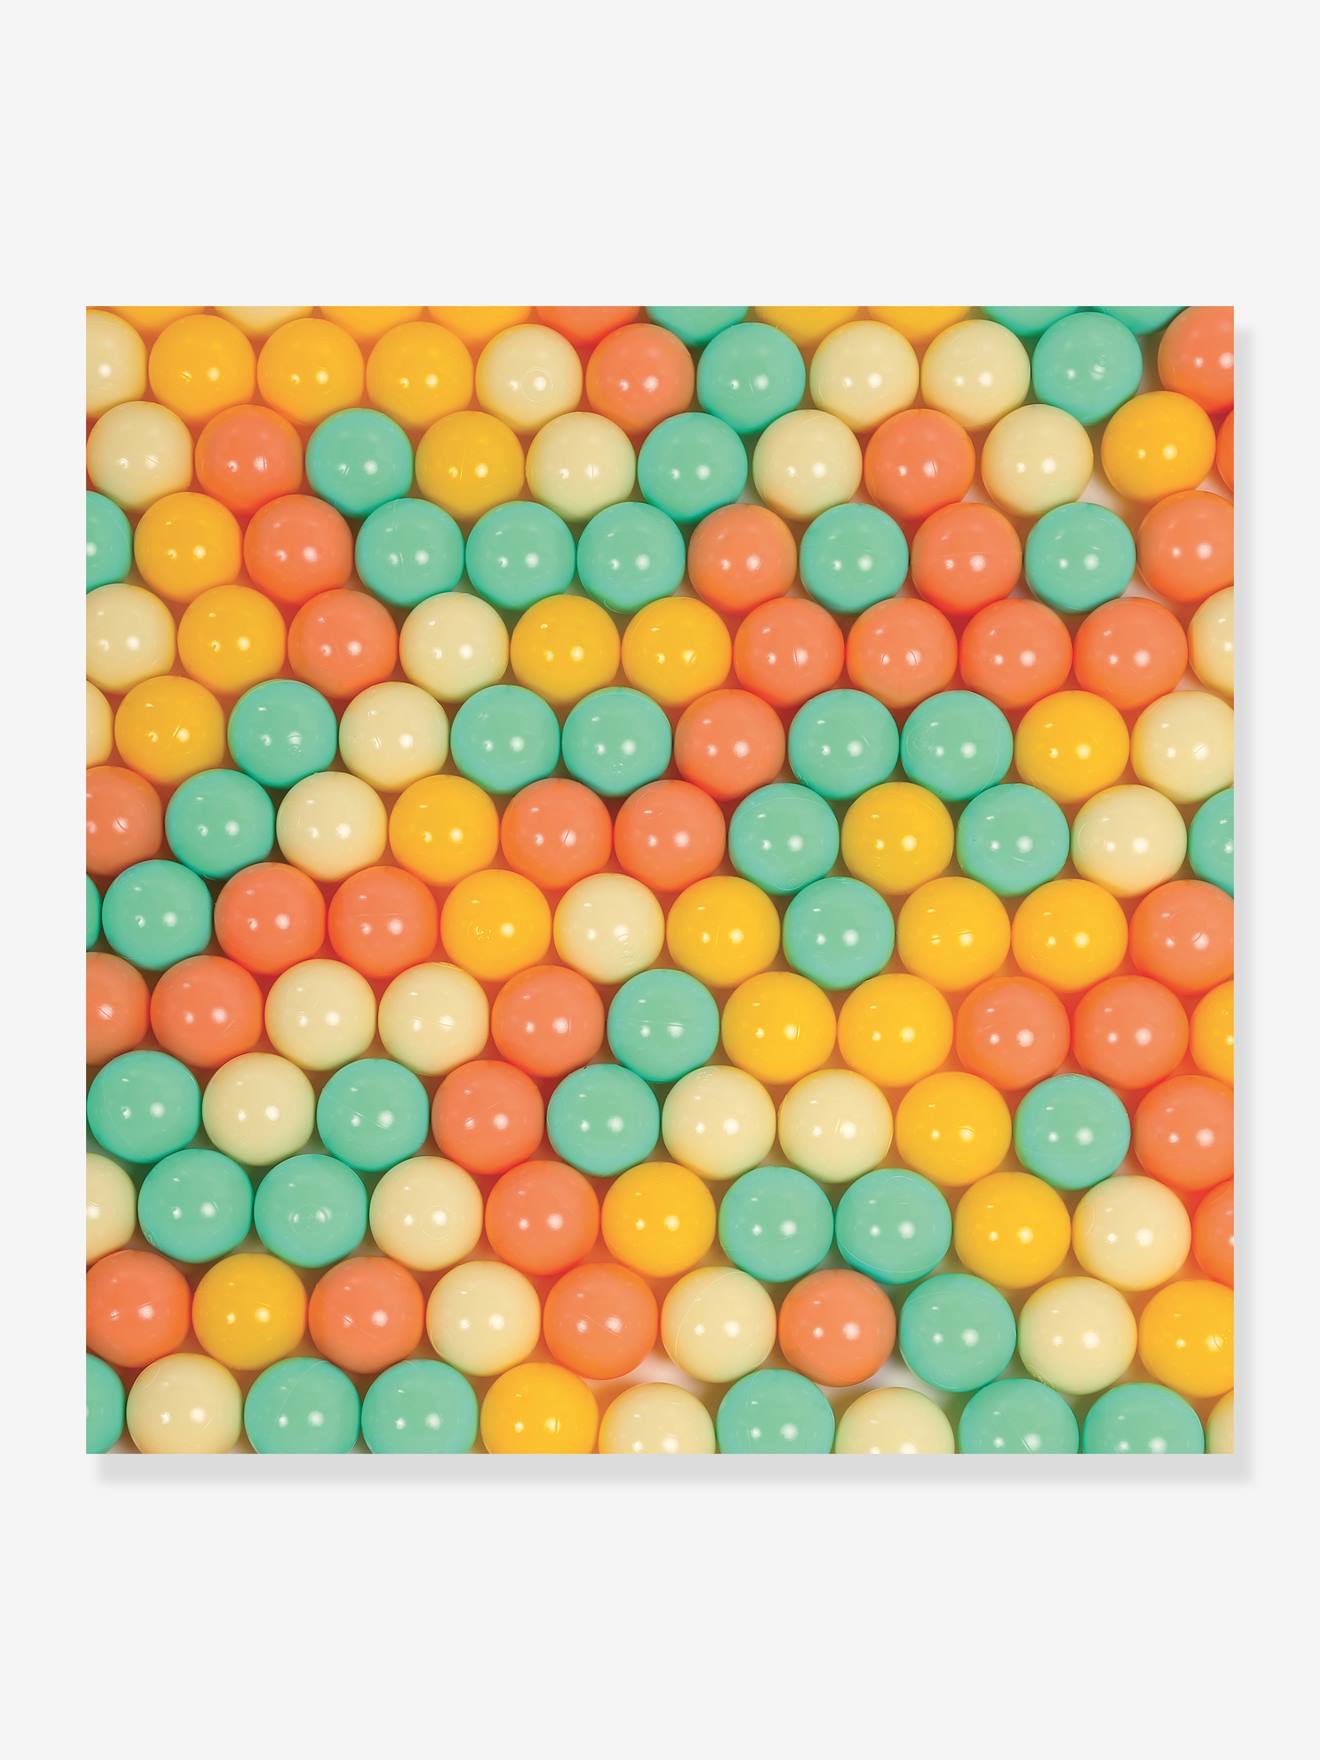 Balle de jeu - multicolore - Kiabi - 6.00€